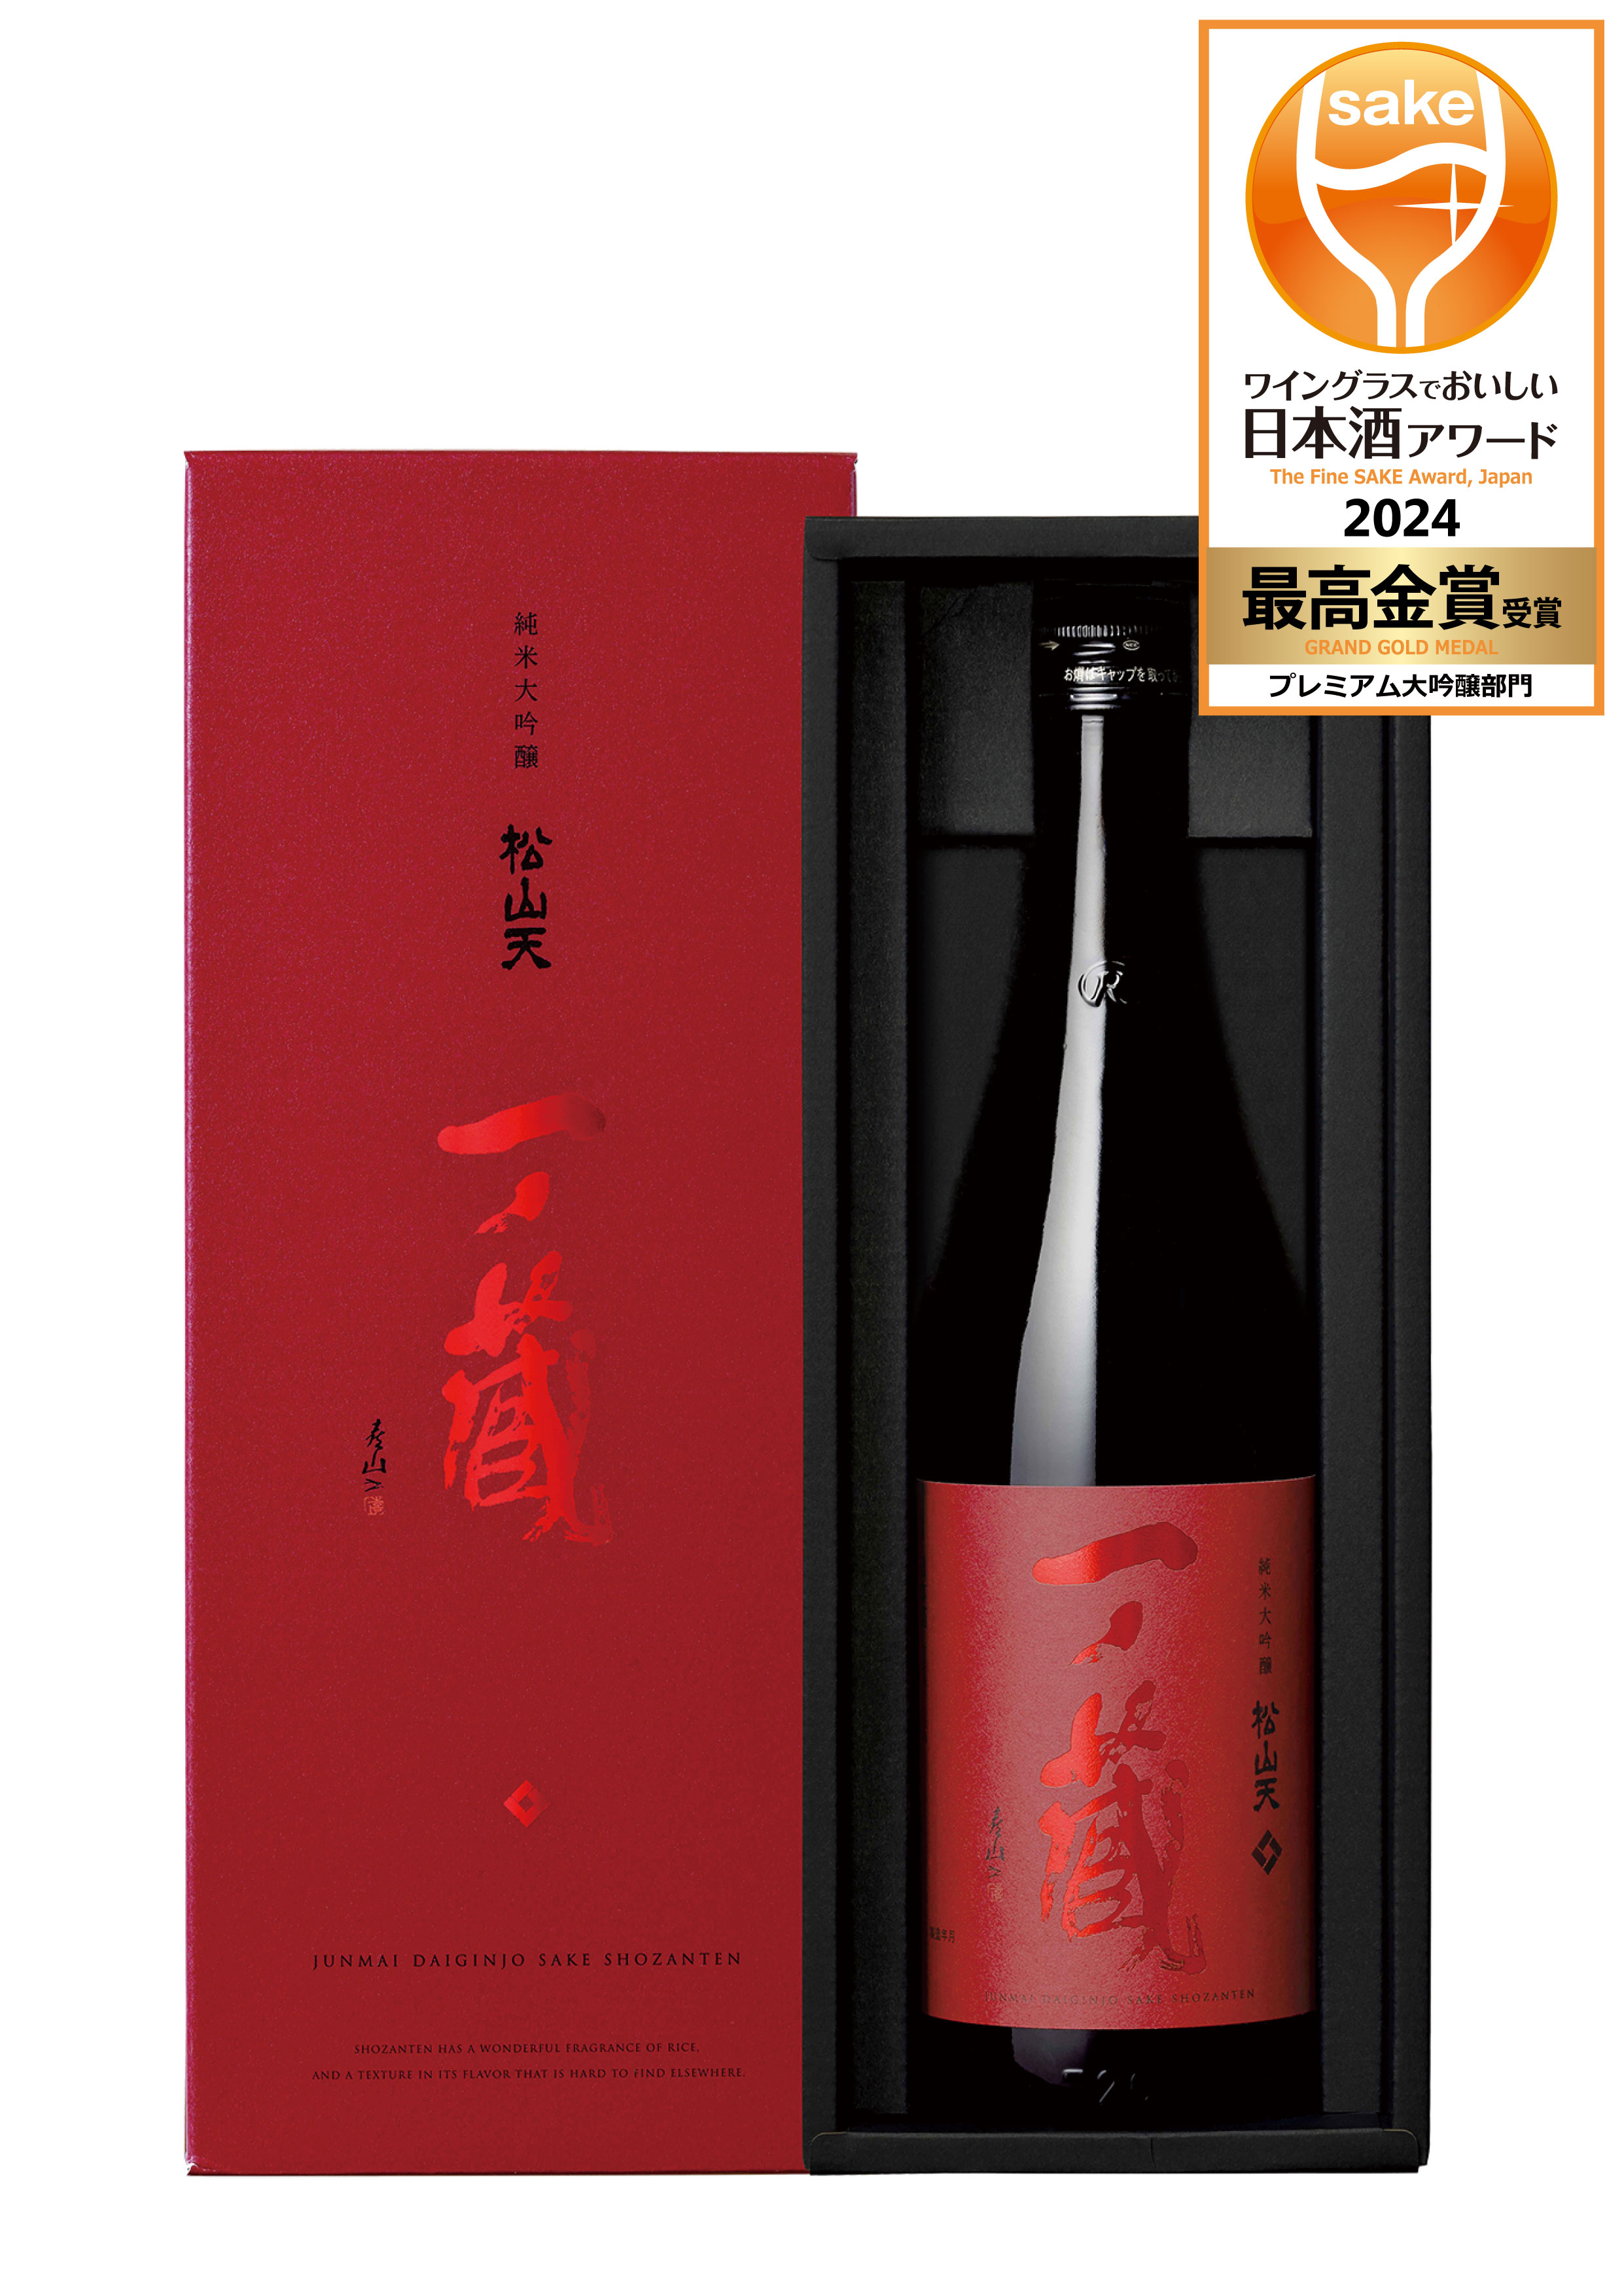 ワイングラスでおいしい日本酒アワード2024』最高金賞、金賞受賞